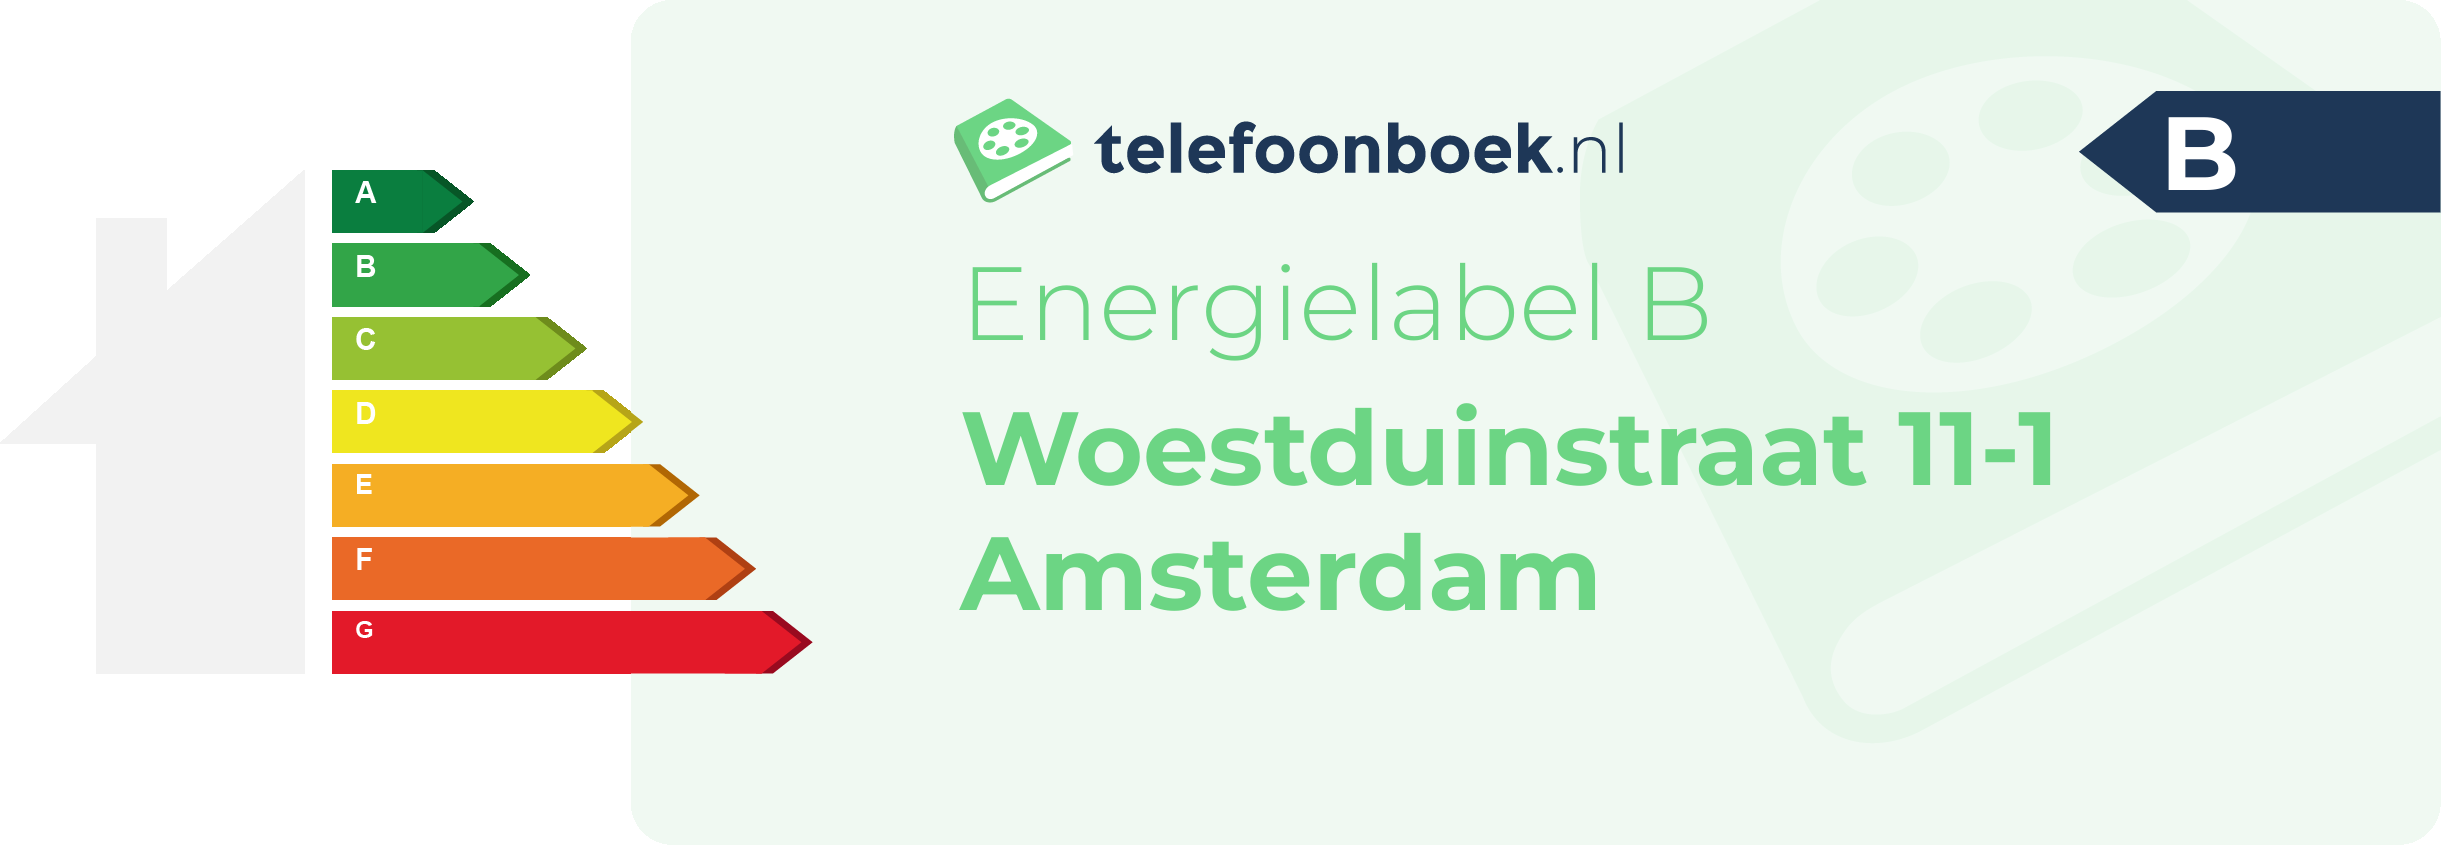 Energielabel Woestduinstraat 11-1 Amsterdam